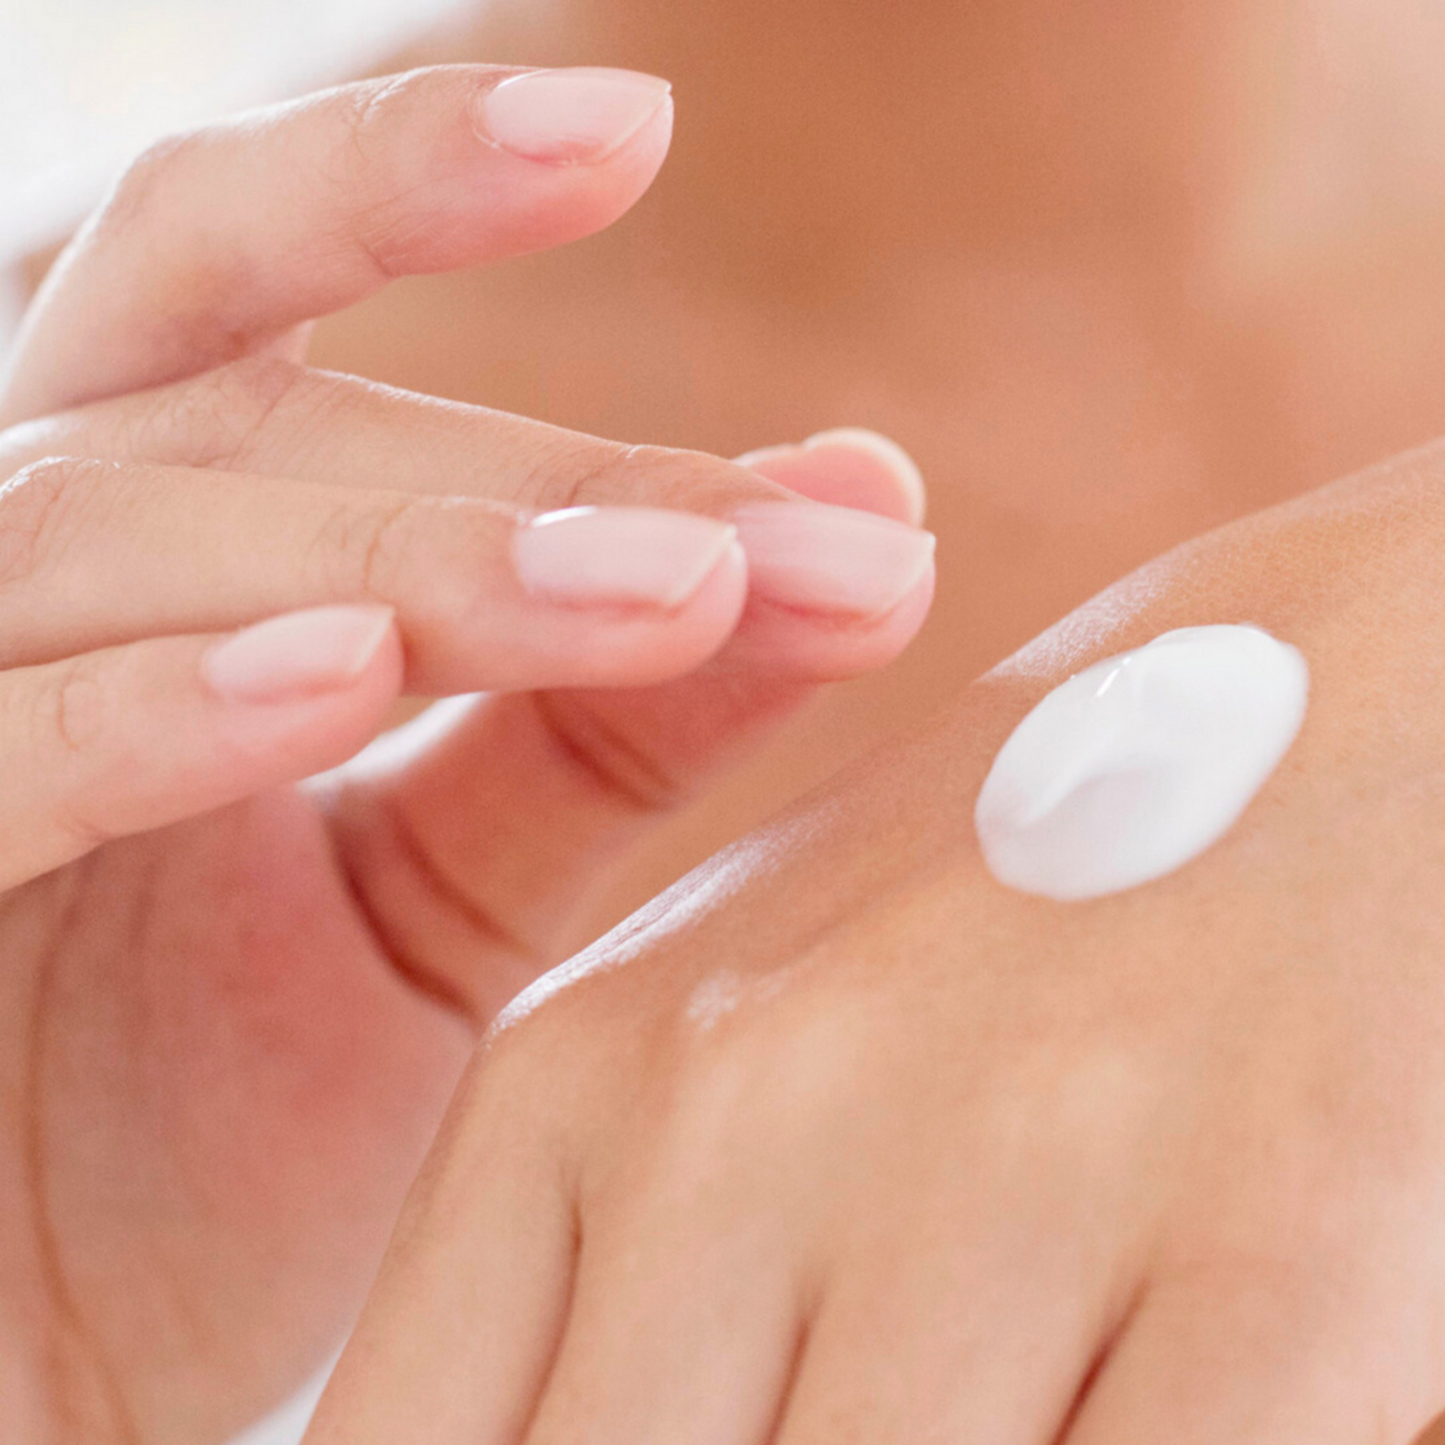 DMS® Hand Cream by Dermaviduals - nourishing and hydrating moisturiser